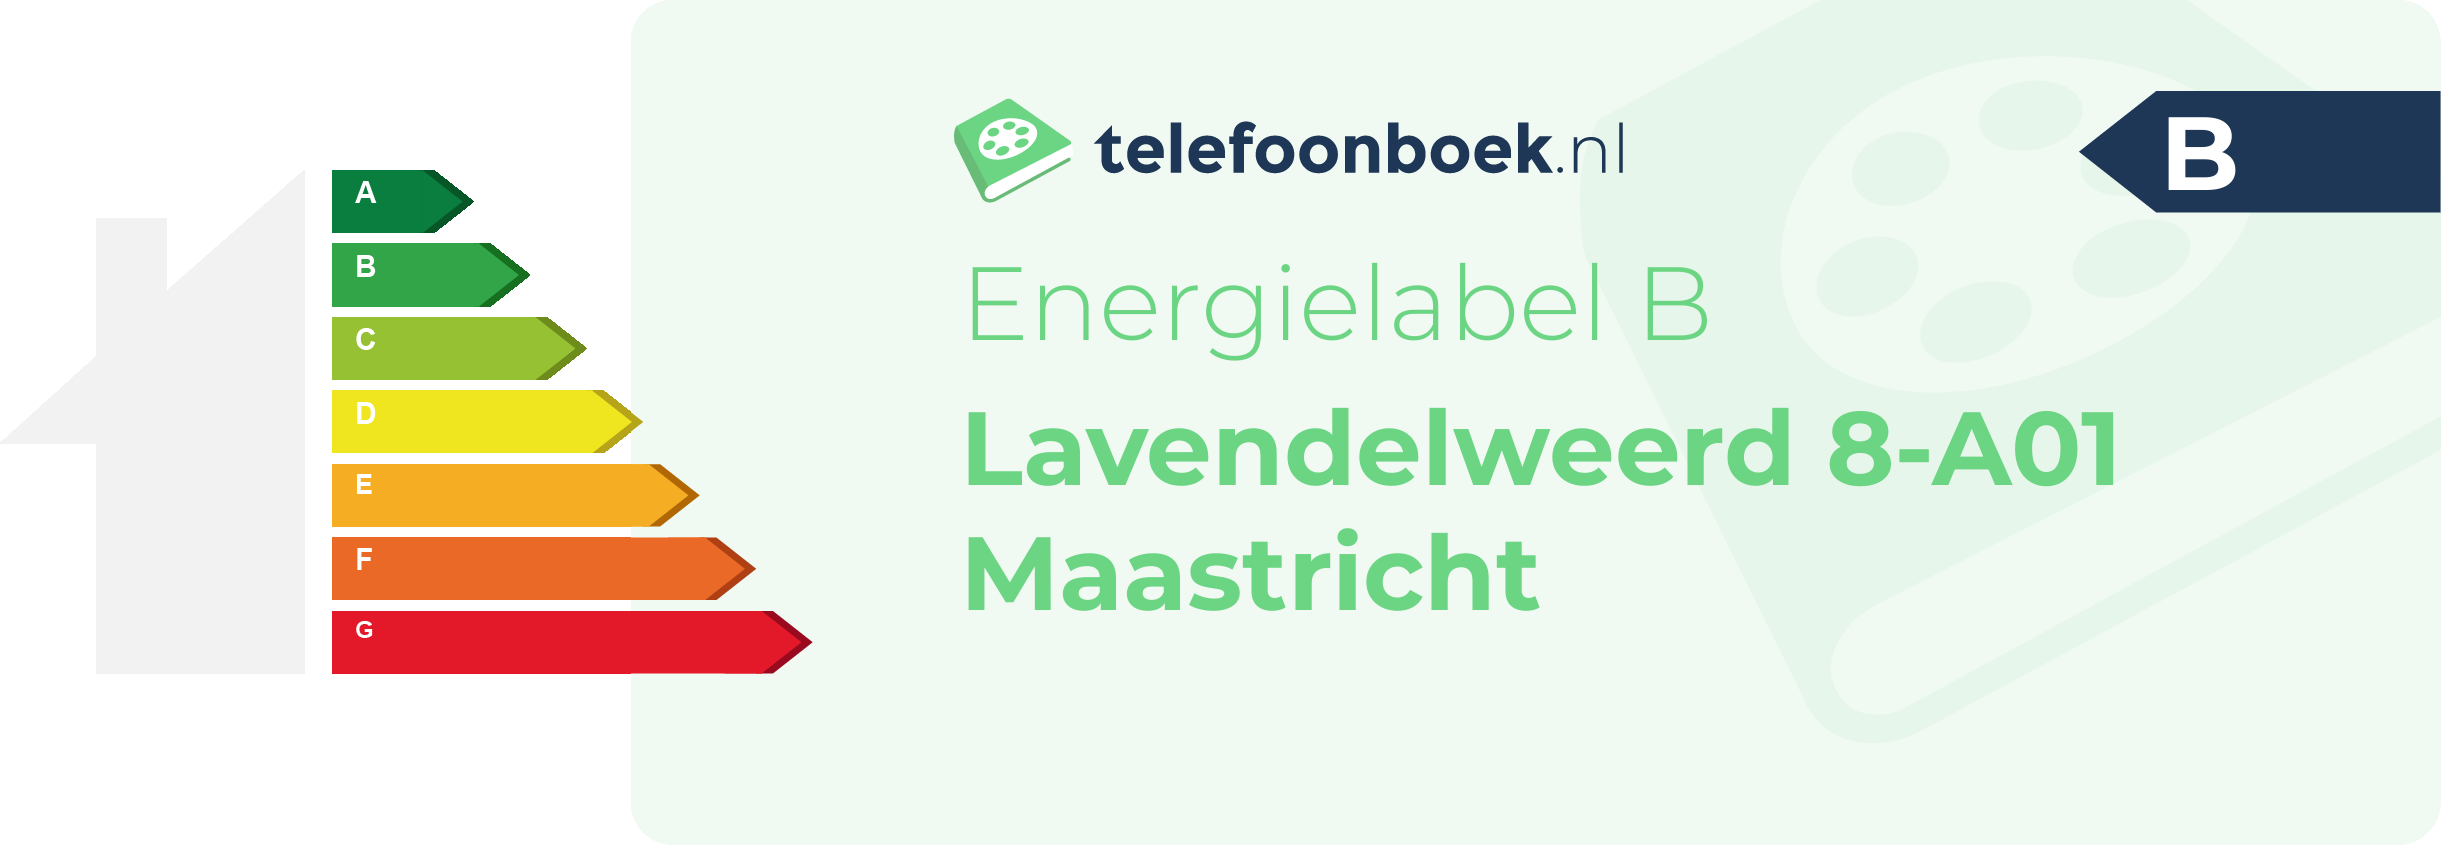 Energielabel Lavendelweerd 8-A01 Maastricht